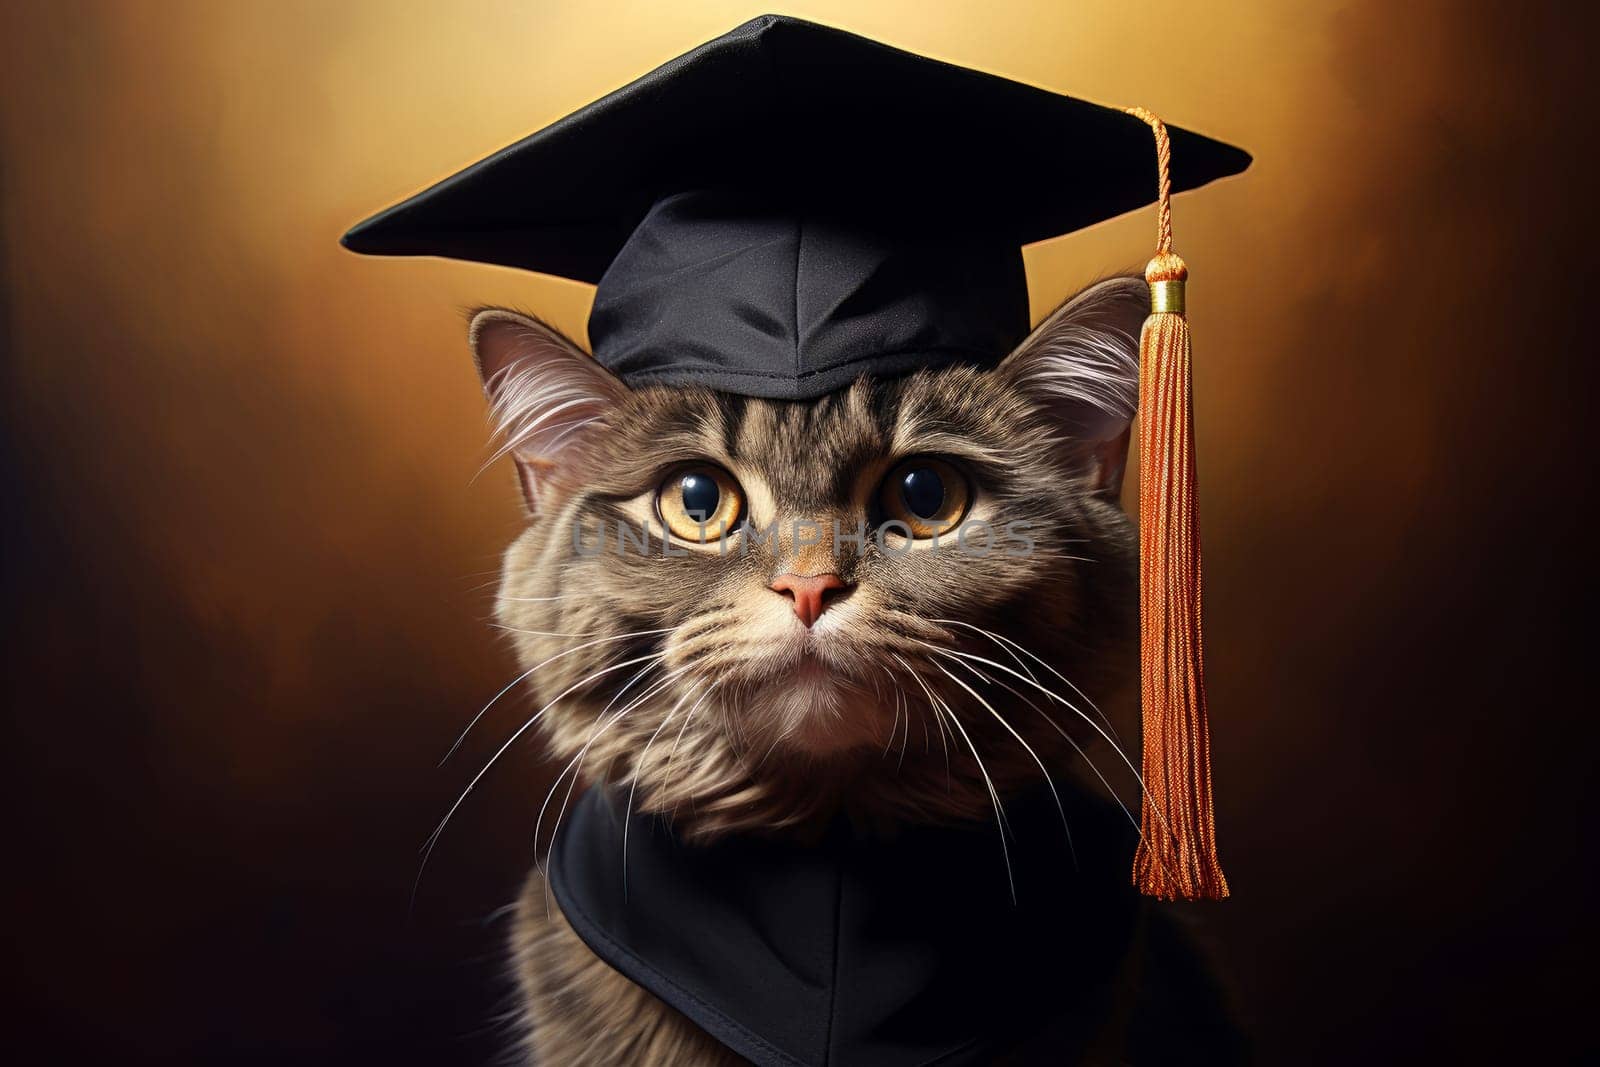 Resourceful Graduate cat smart. Kitten scientist. Generate AI